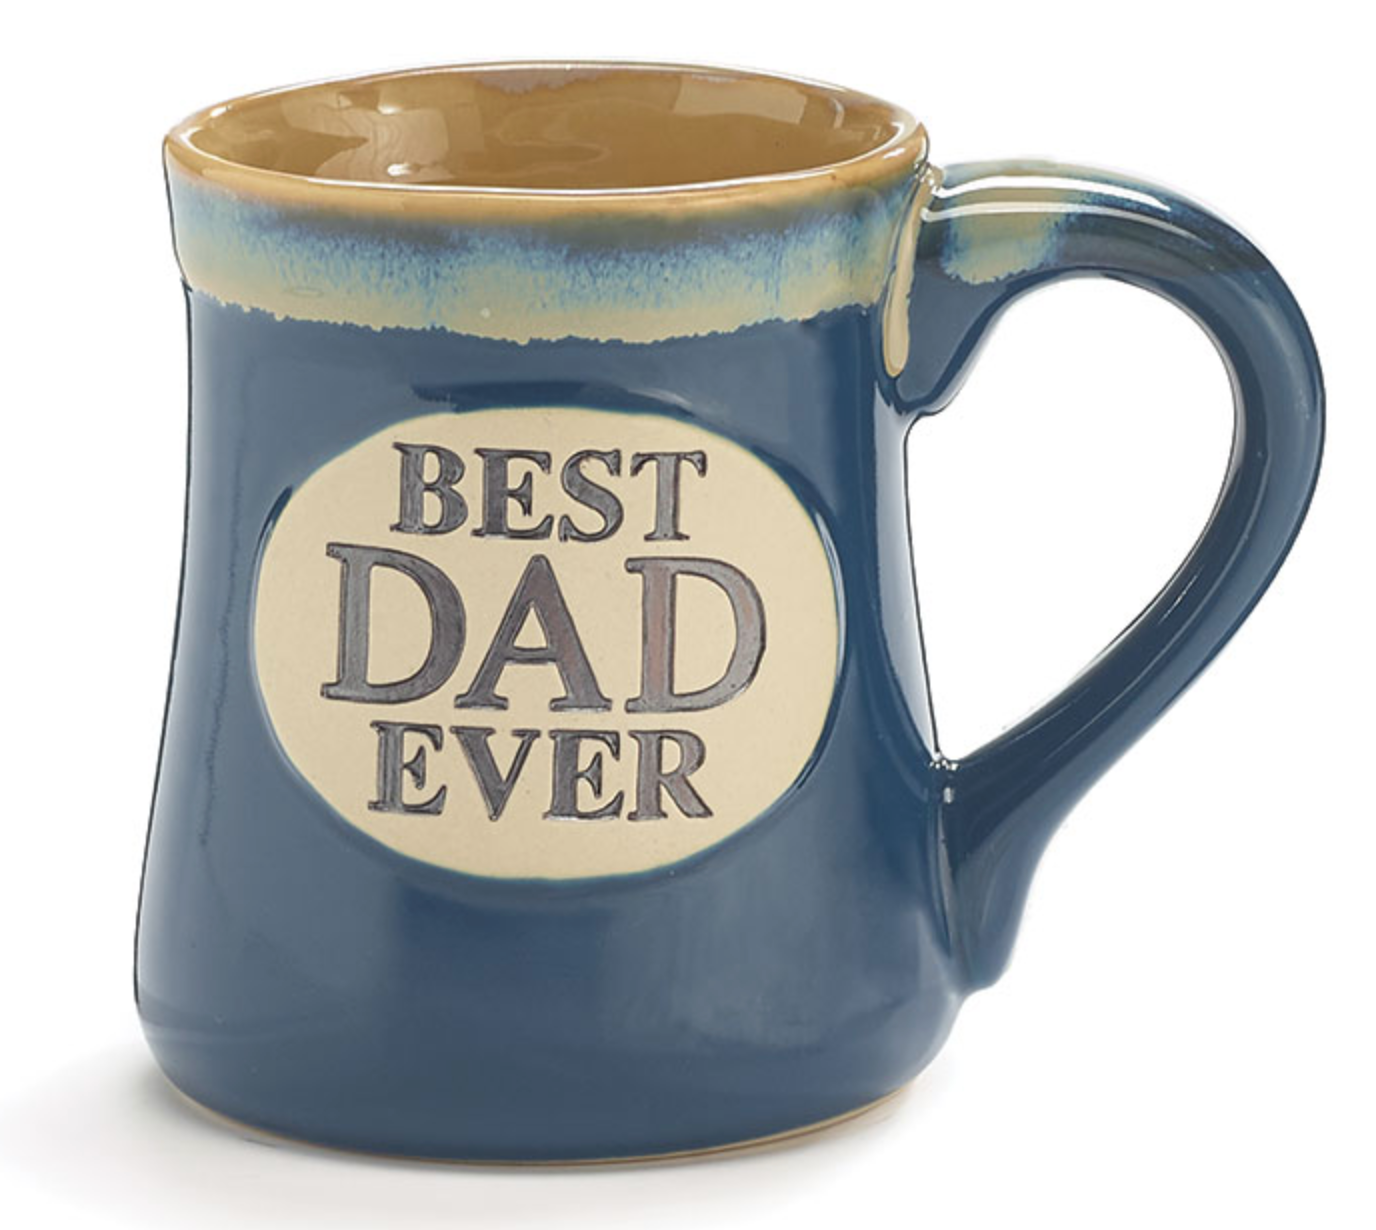 "Best Dad Ever" Porcelain Mug